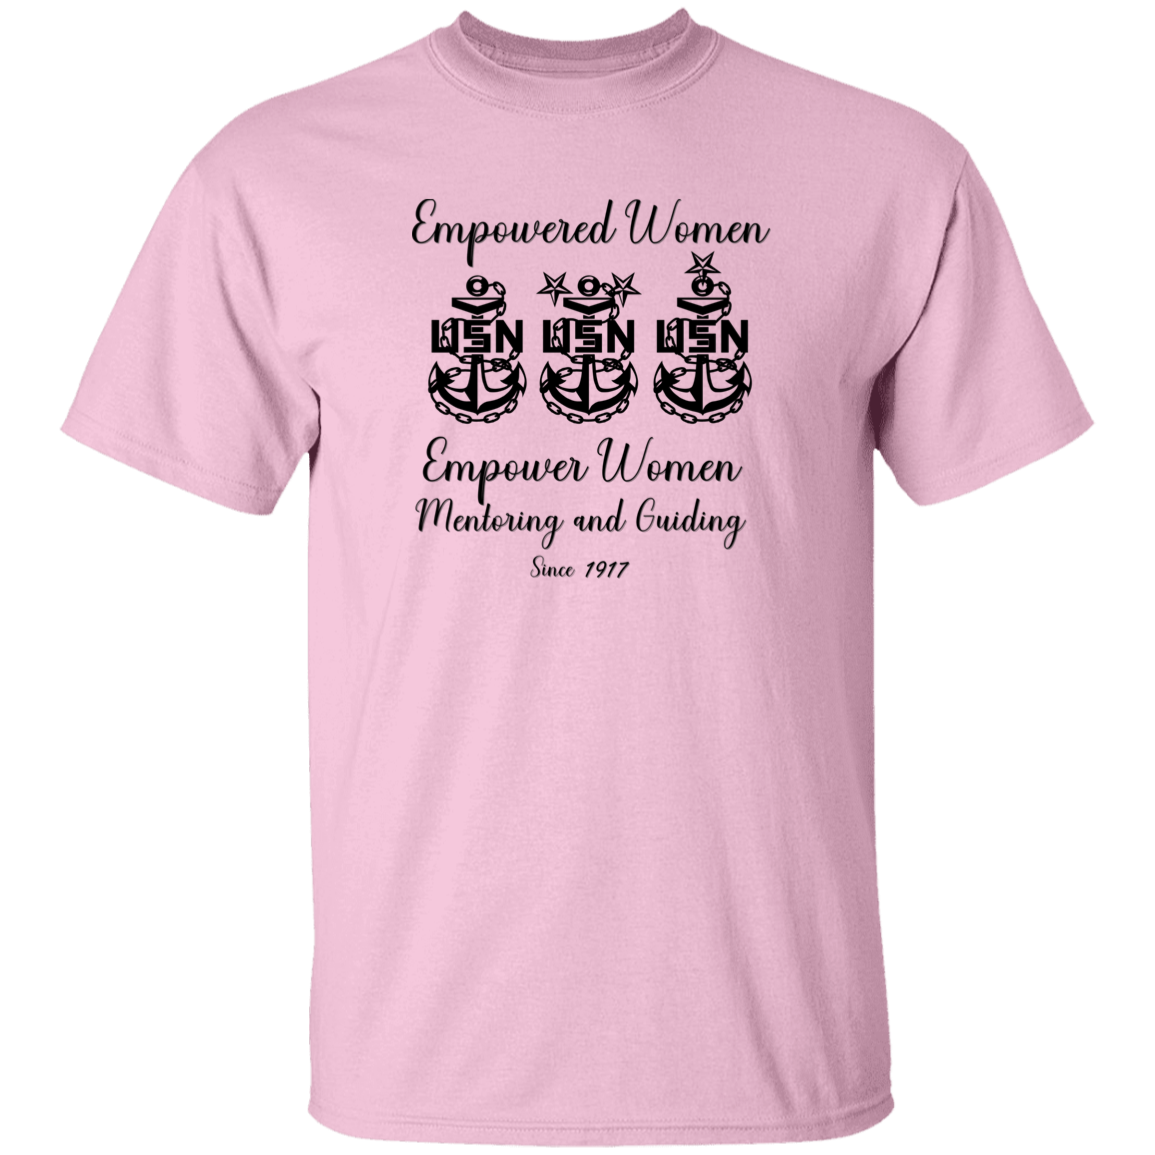 Empowered Women 5.3 oz. T-Shirt